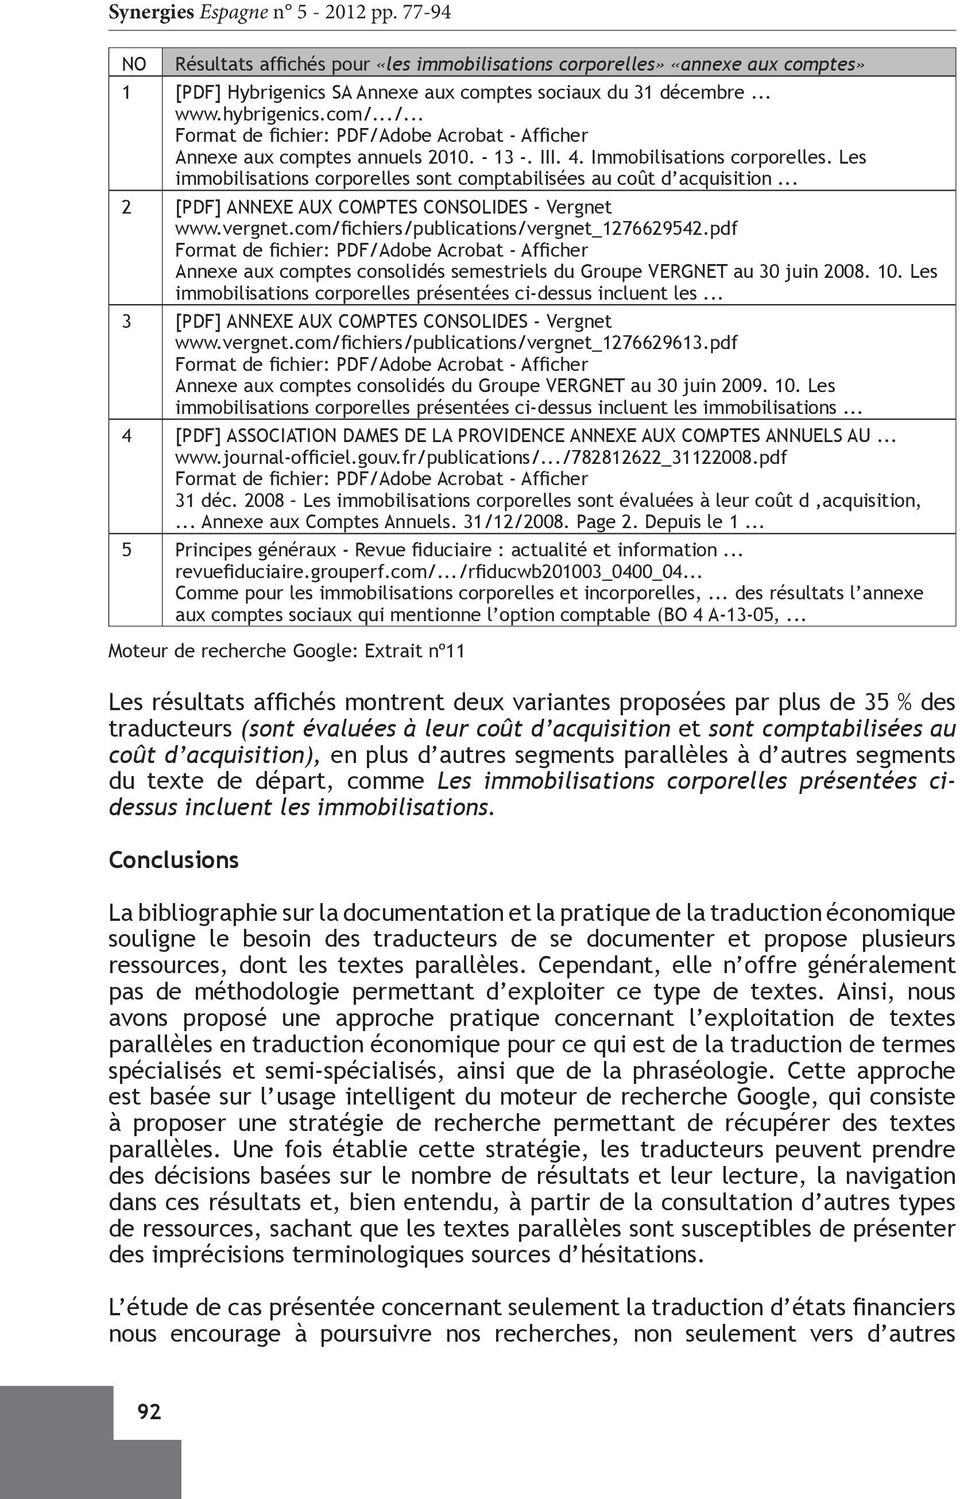 .. 2 [PDF] ANNEXE AUX COMPTES CONSOLIDES - Vergnet www.vergnet.com/fichiers/publications/vergnet_1276629542.pdf Annexe aux comptes consolidés semestriels du Groupe VERGNET au 30 juin 2008. 10.